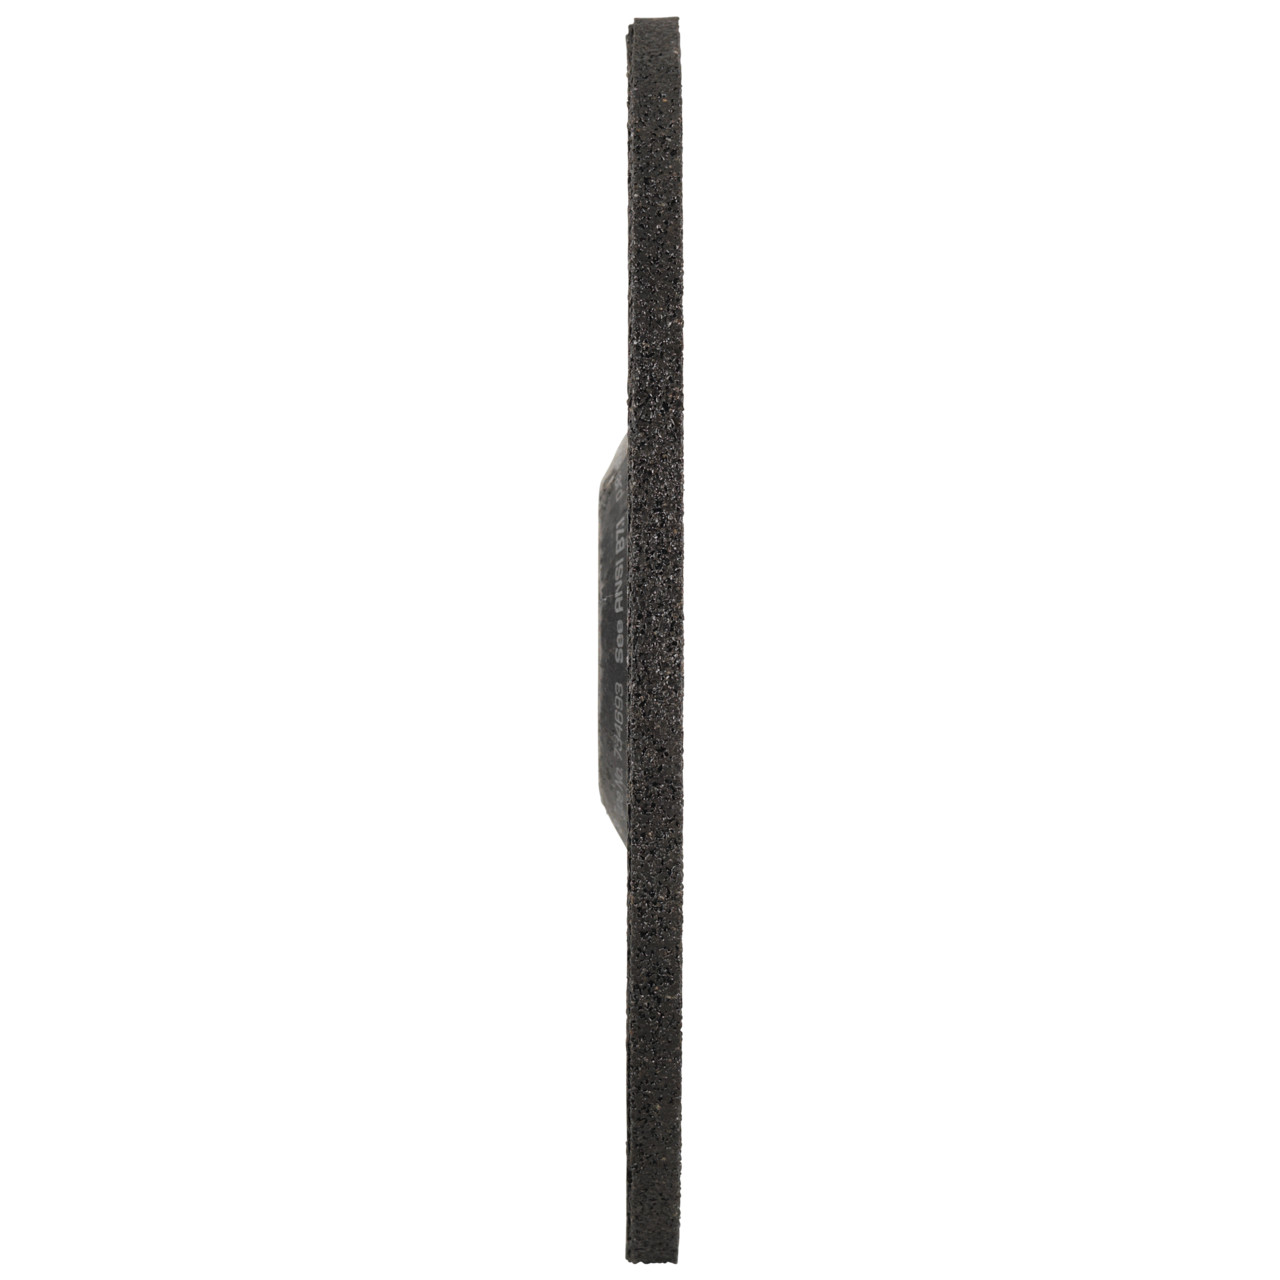 TYROLIT slijpschijf DxUxH 178x7x22,23 PIPELINER 2in1 voor staal en roestvrij staal, vorm: 27 - offset-uitvoering, Art. 734693